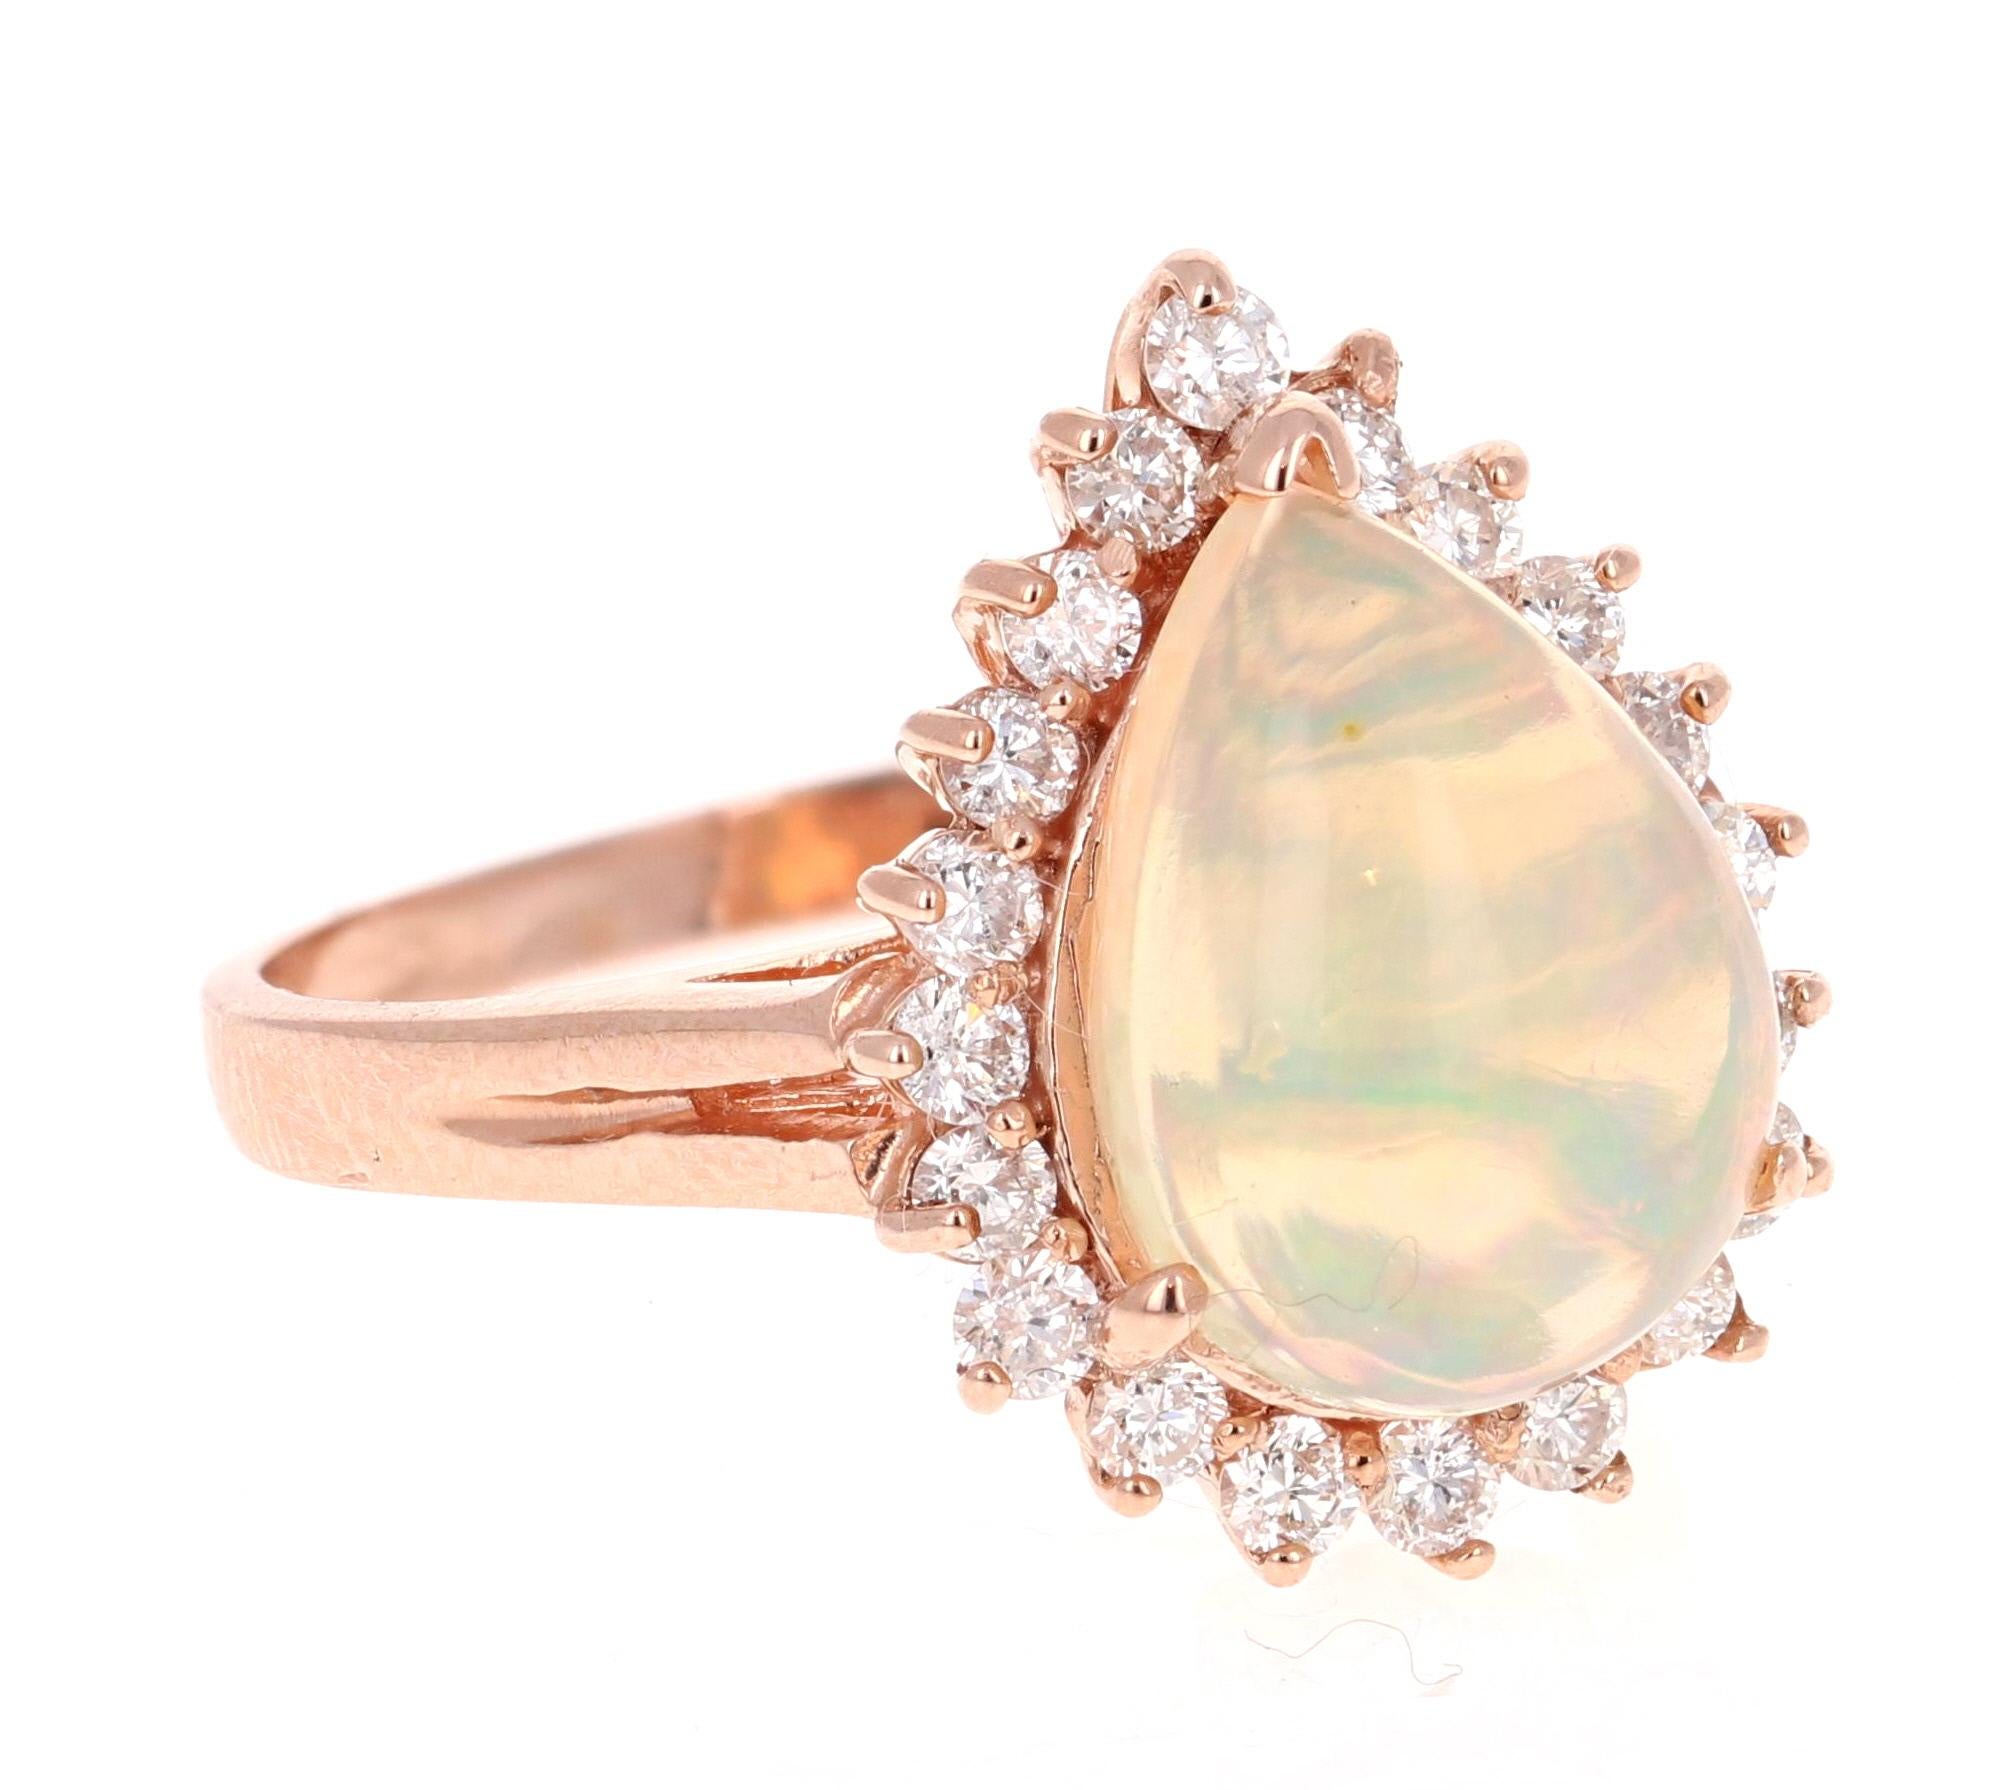 Opulenter Ring mit 3,18 Karat Opal und Diamant aus 14 Karat Roségold.
Der wunderschöne Opal im Birnenschliff mit seinen auffälligen Farbschattierungen wiegt 2,59 Karat. Er ist umgeben von 20 Diamanten im Rundschliff mit einem Gewicht von 0,59 Karat.